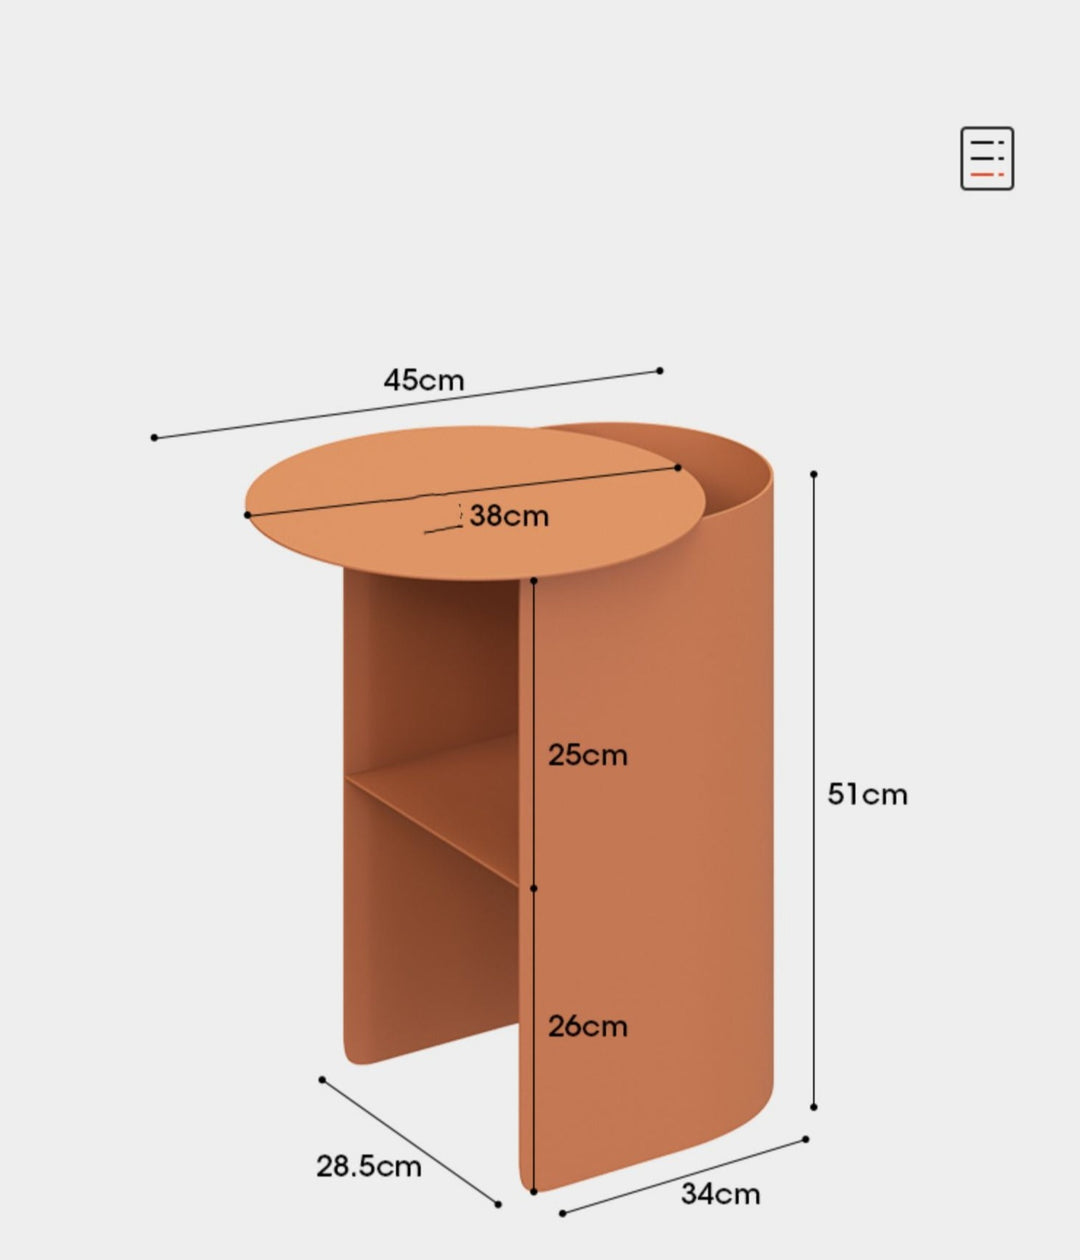 Beistelltische VARIOUS Beistelltisch aus Metall beistelltisch cj Facebook iconic max minimal schlafzimmer accessoires Tische vorübergehend verborgen